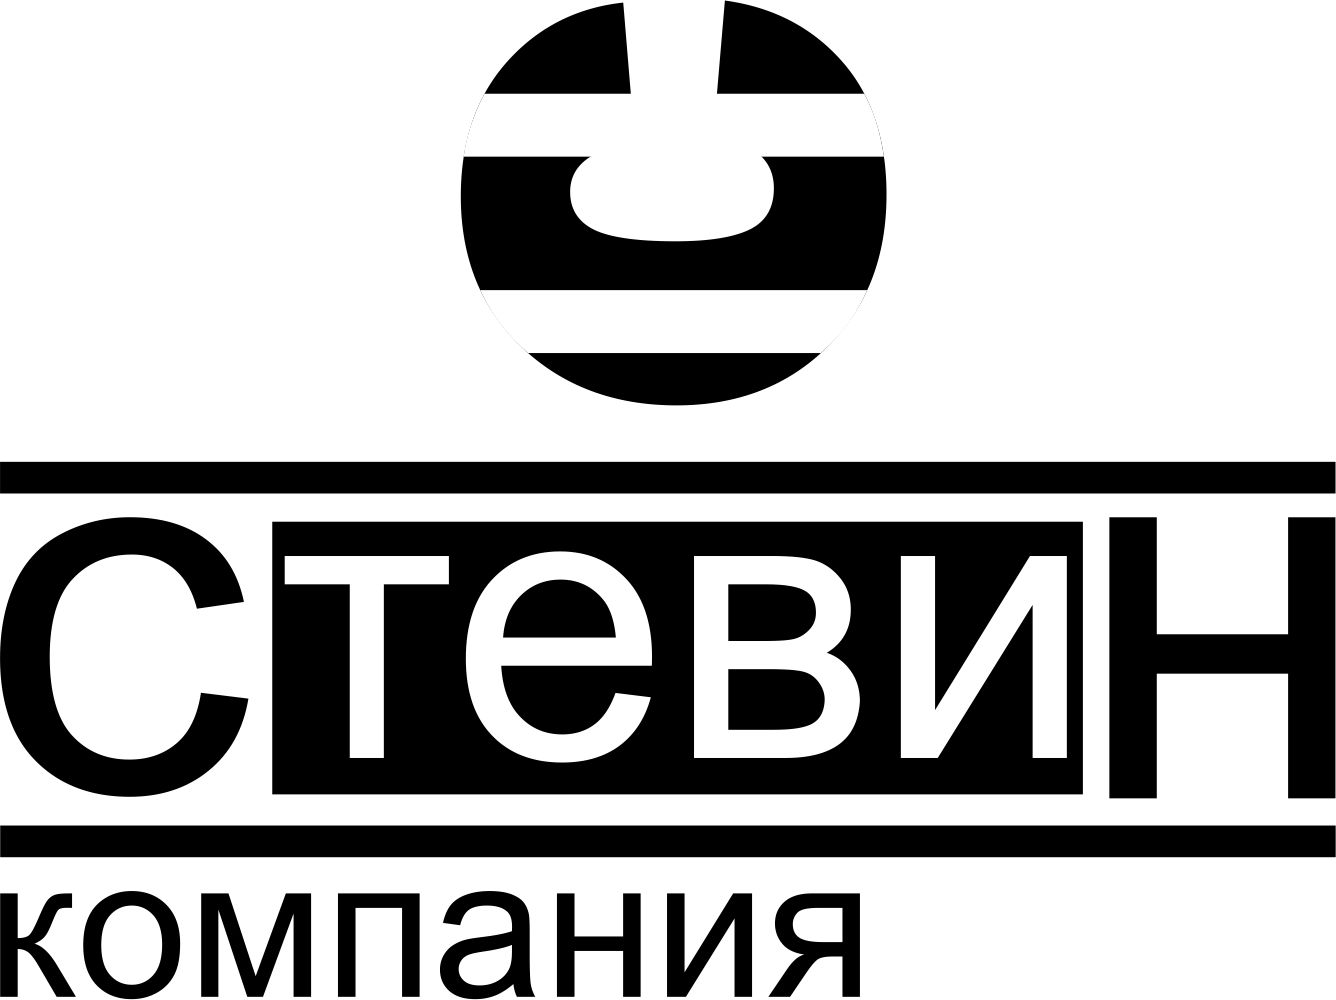 Логотип компании "Стевин"